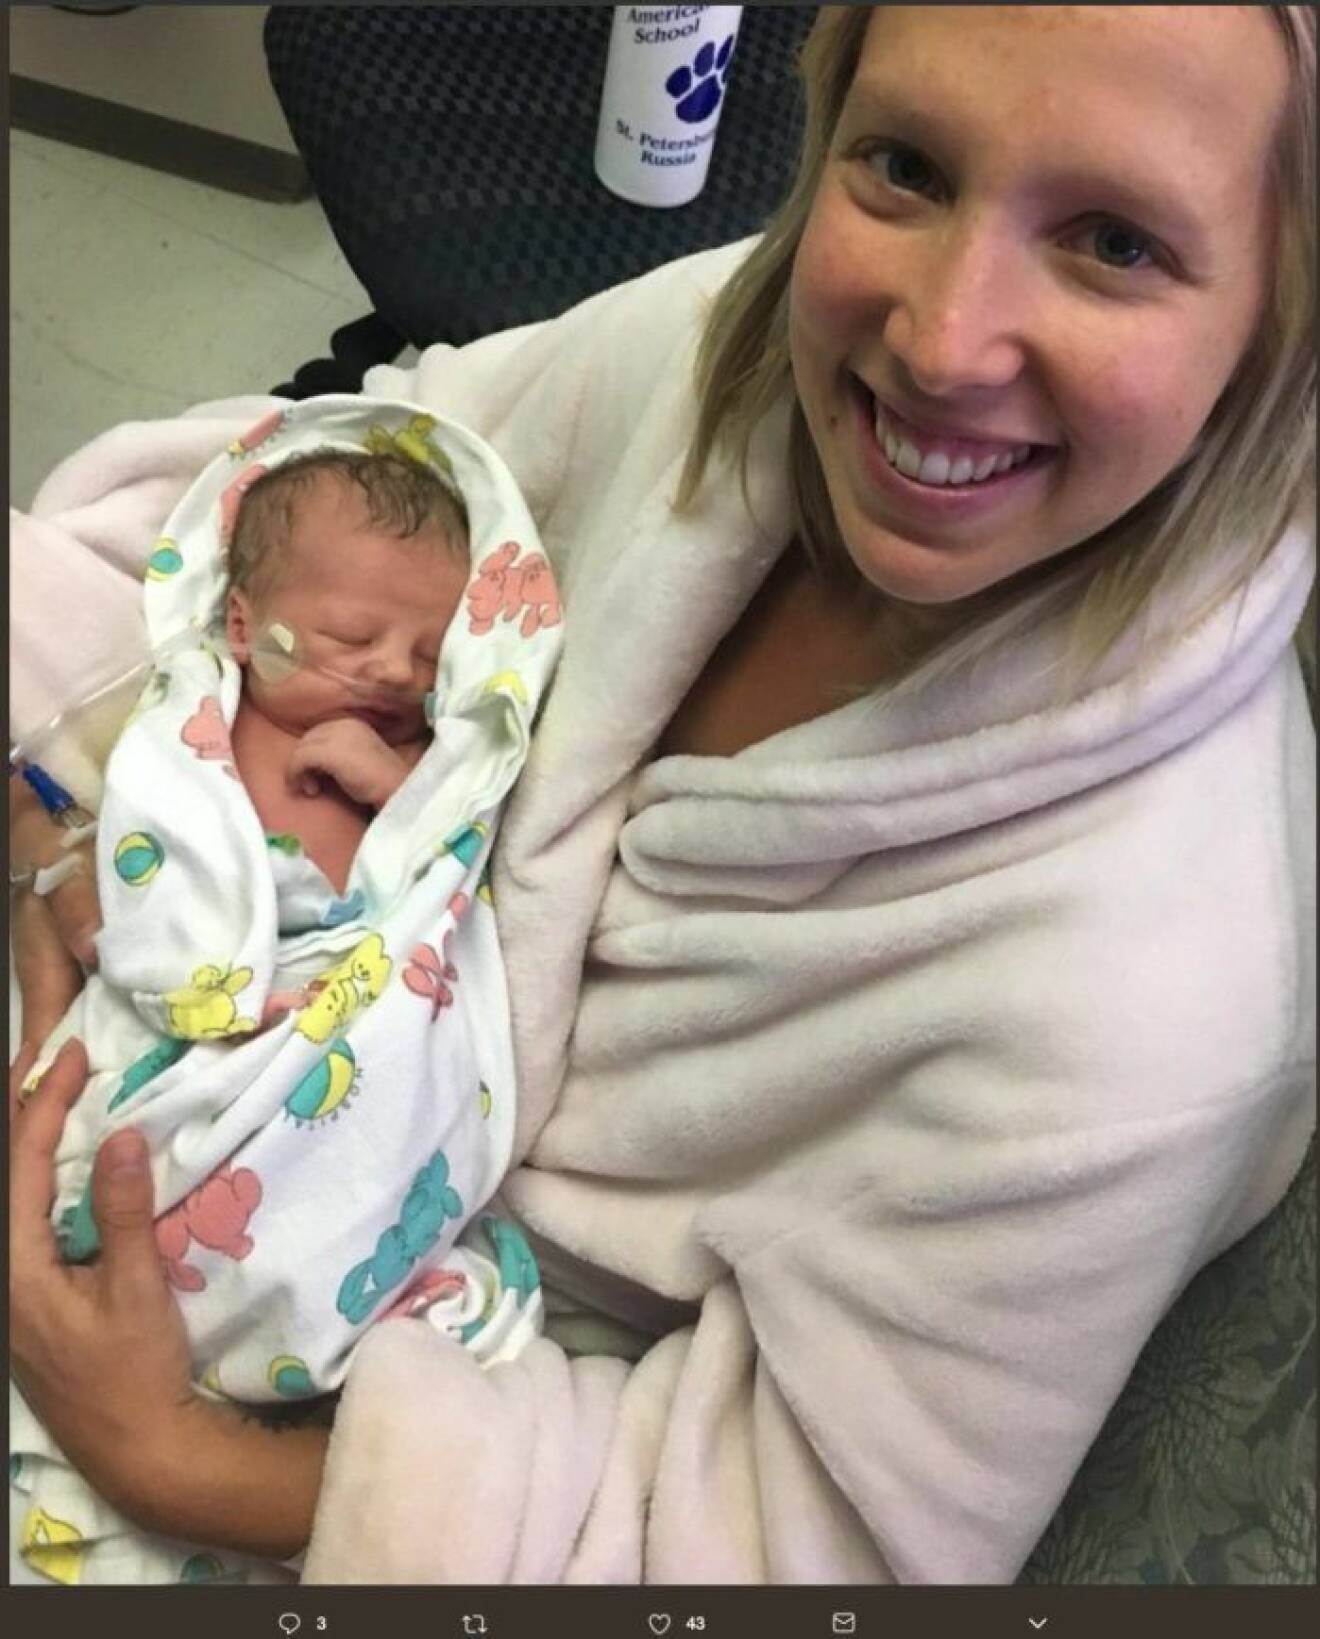 Victoria ”Tori” Allen med parets nyfödda barn.